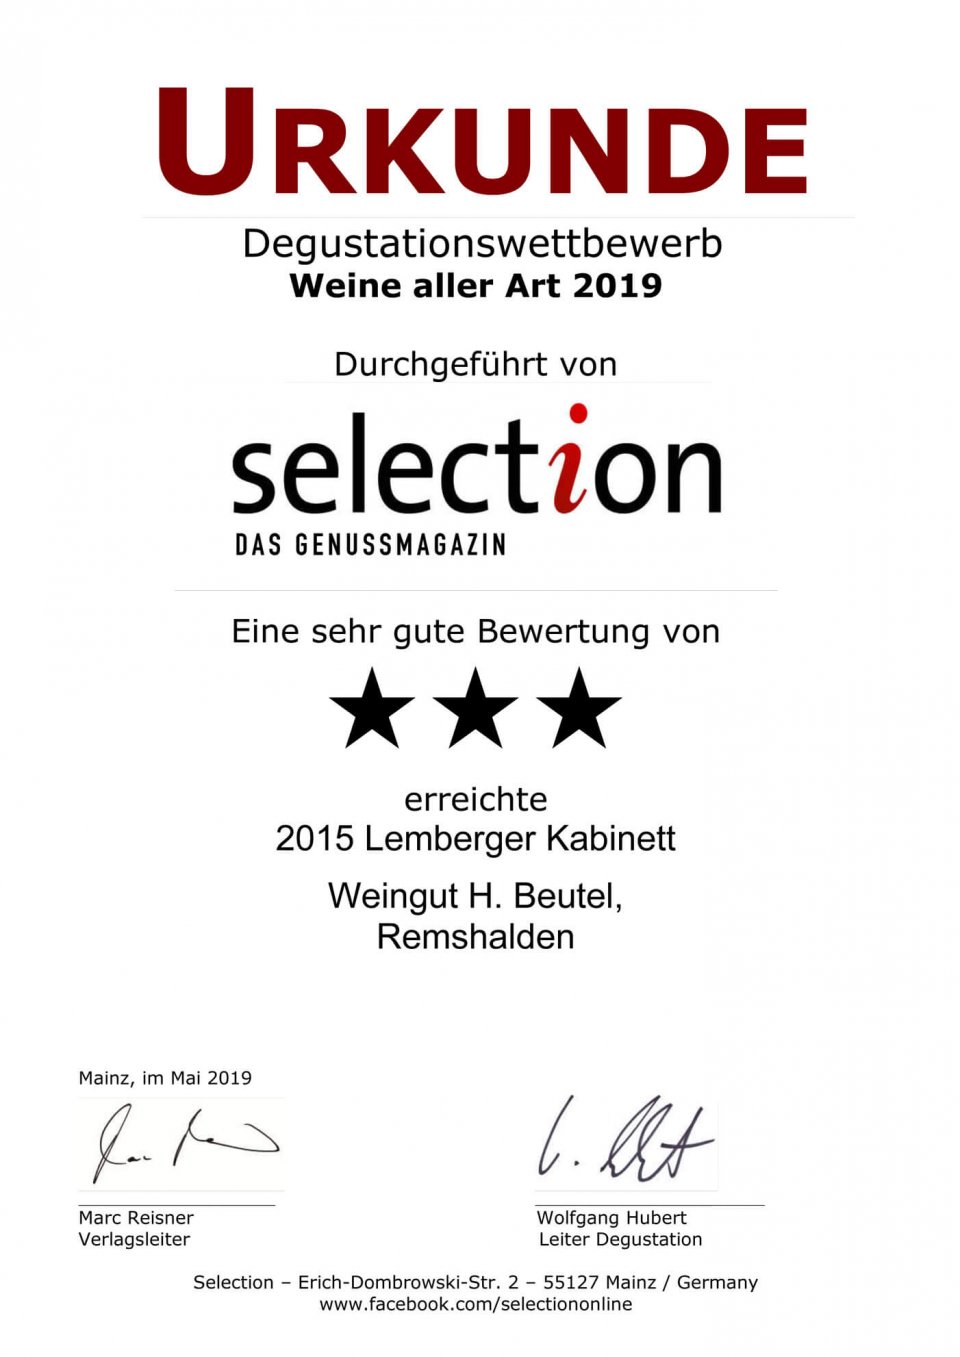 Urkunde SELECTION 2019 Weine aller Art - SEHR GUT - Lemberger Kabinett 2015